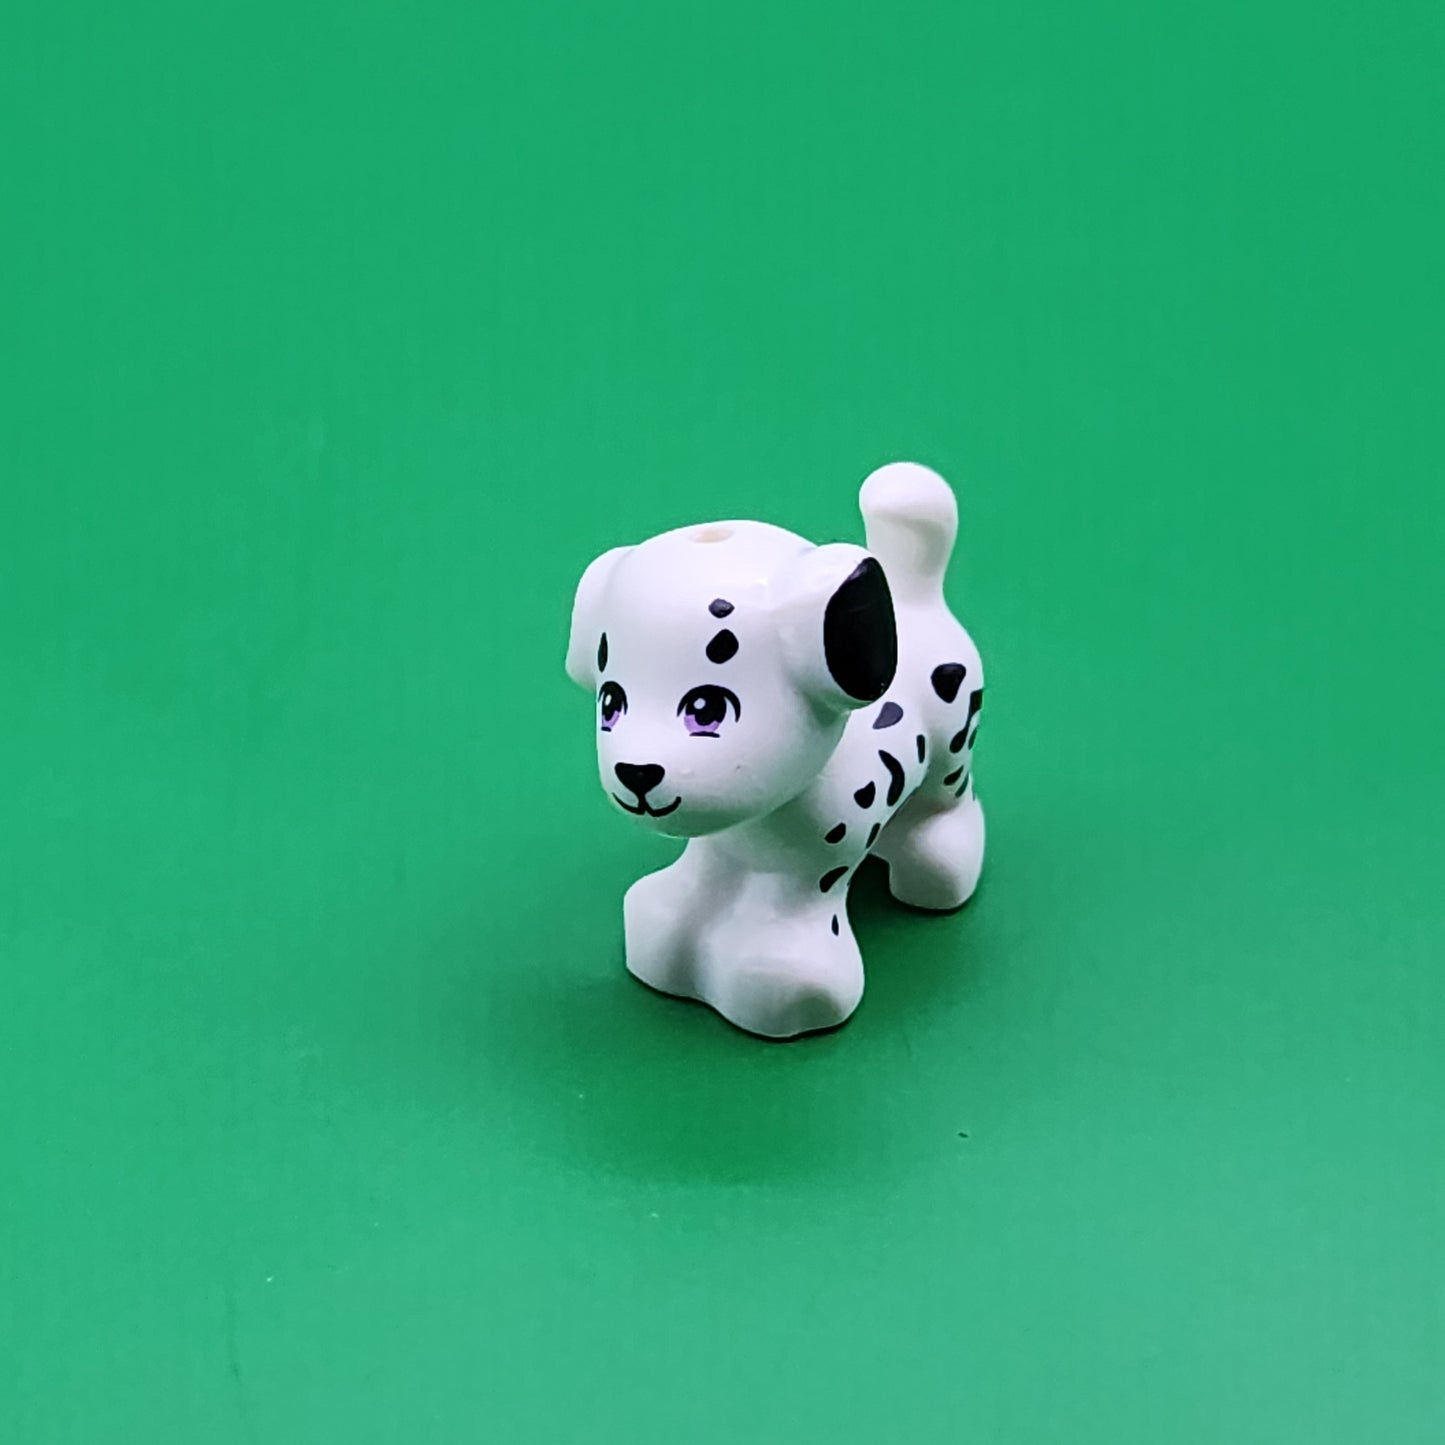 Lego Animals You Choose Dog Cat Elephant Horse Bunny Pet